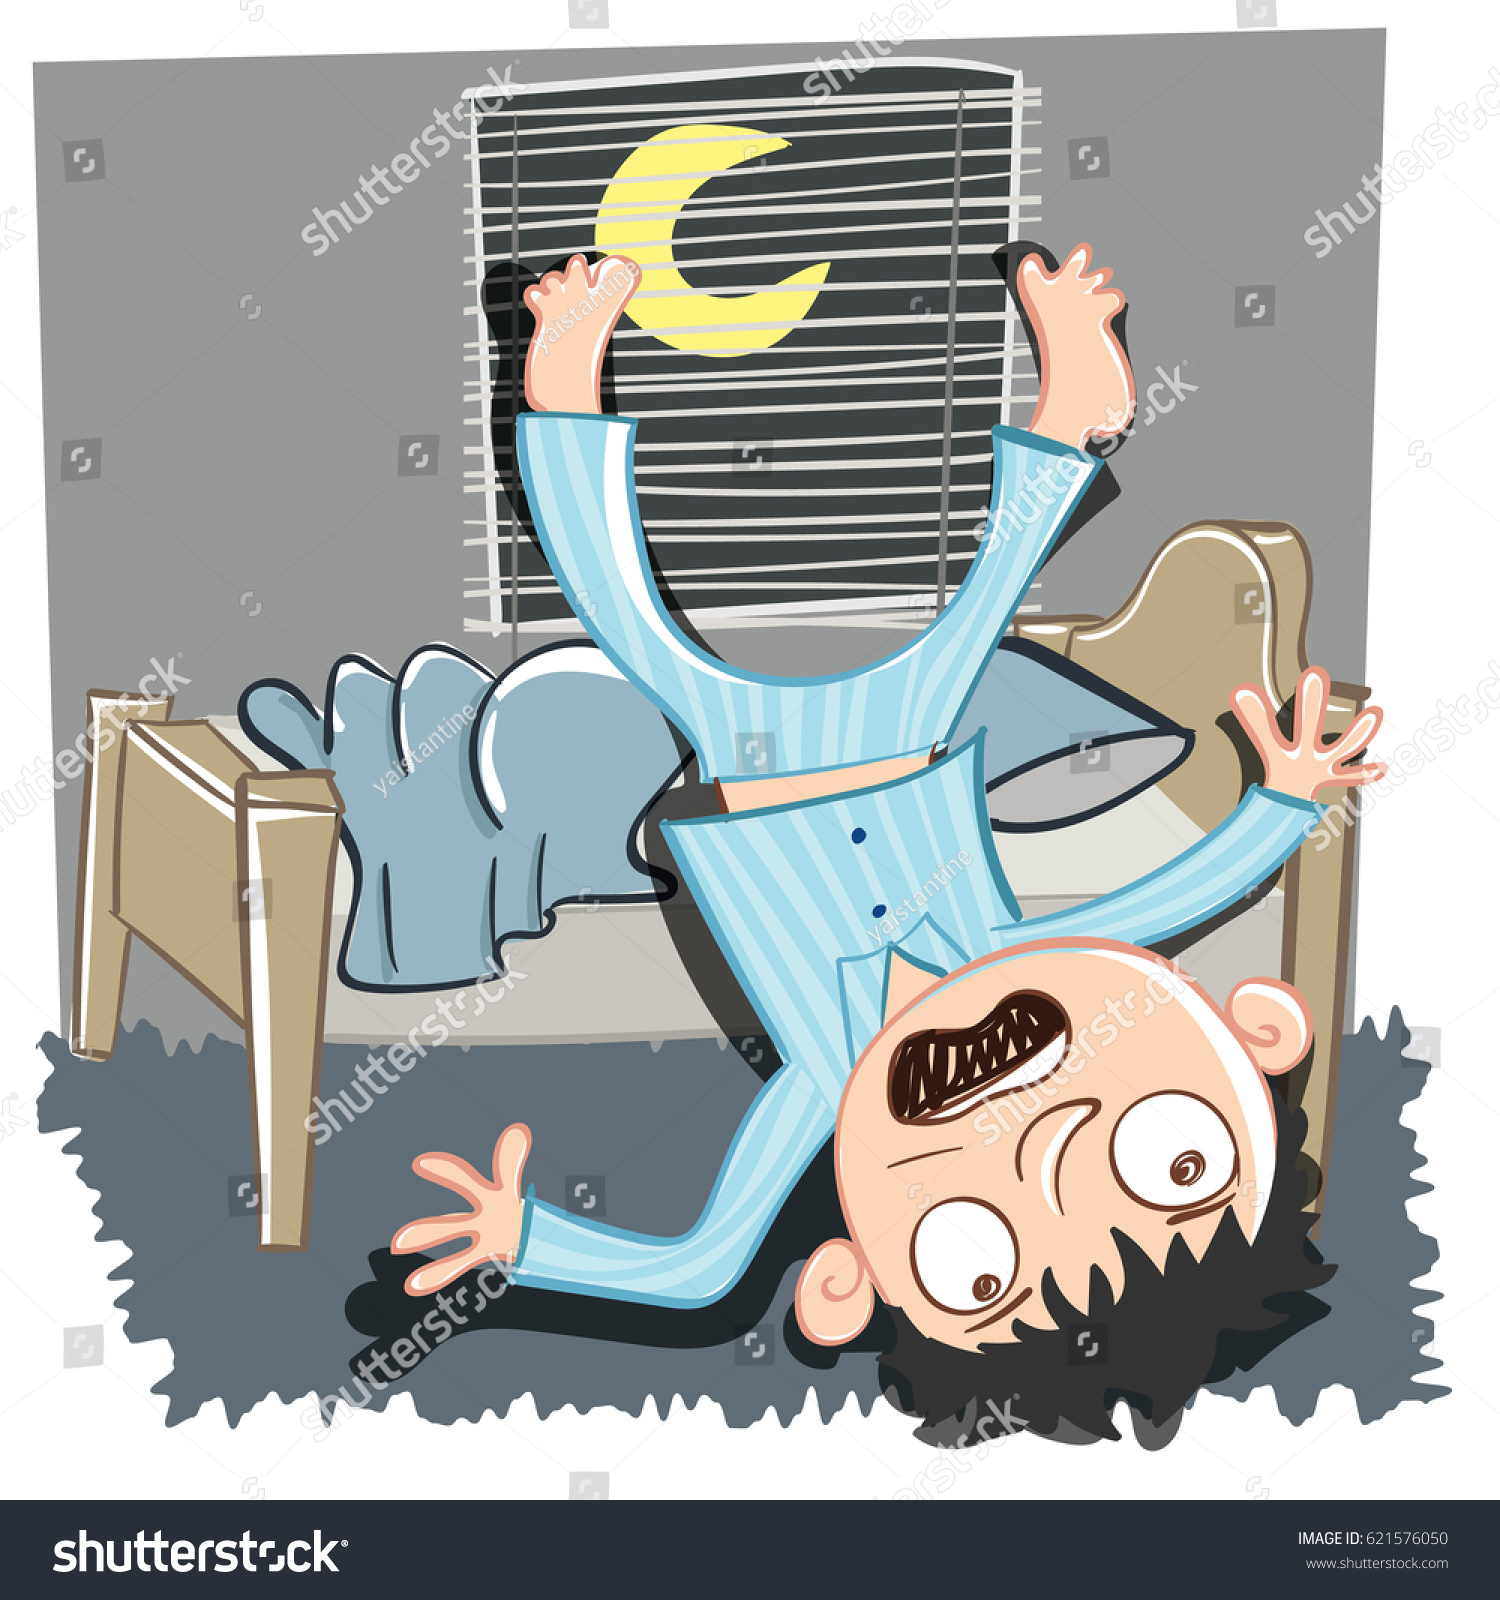 Cartoon Man Falling Out Bed Vetor Stock Livre De Direitos 621576050 Shutterstock